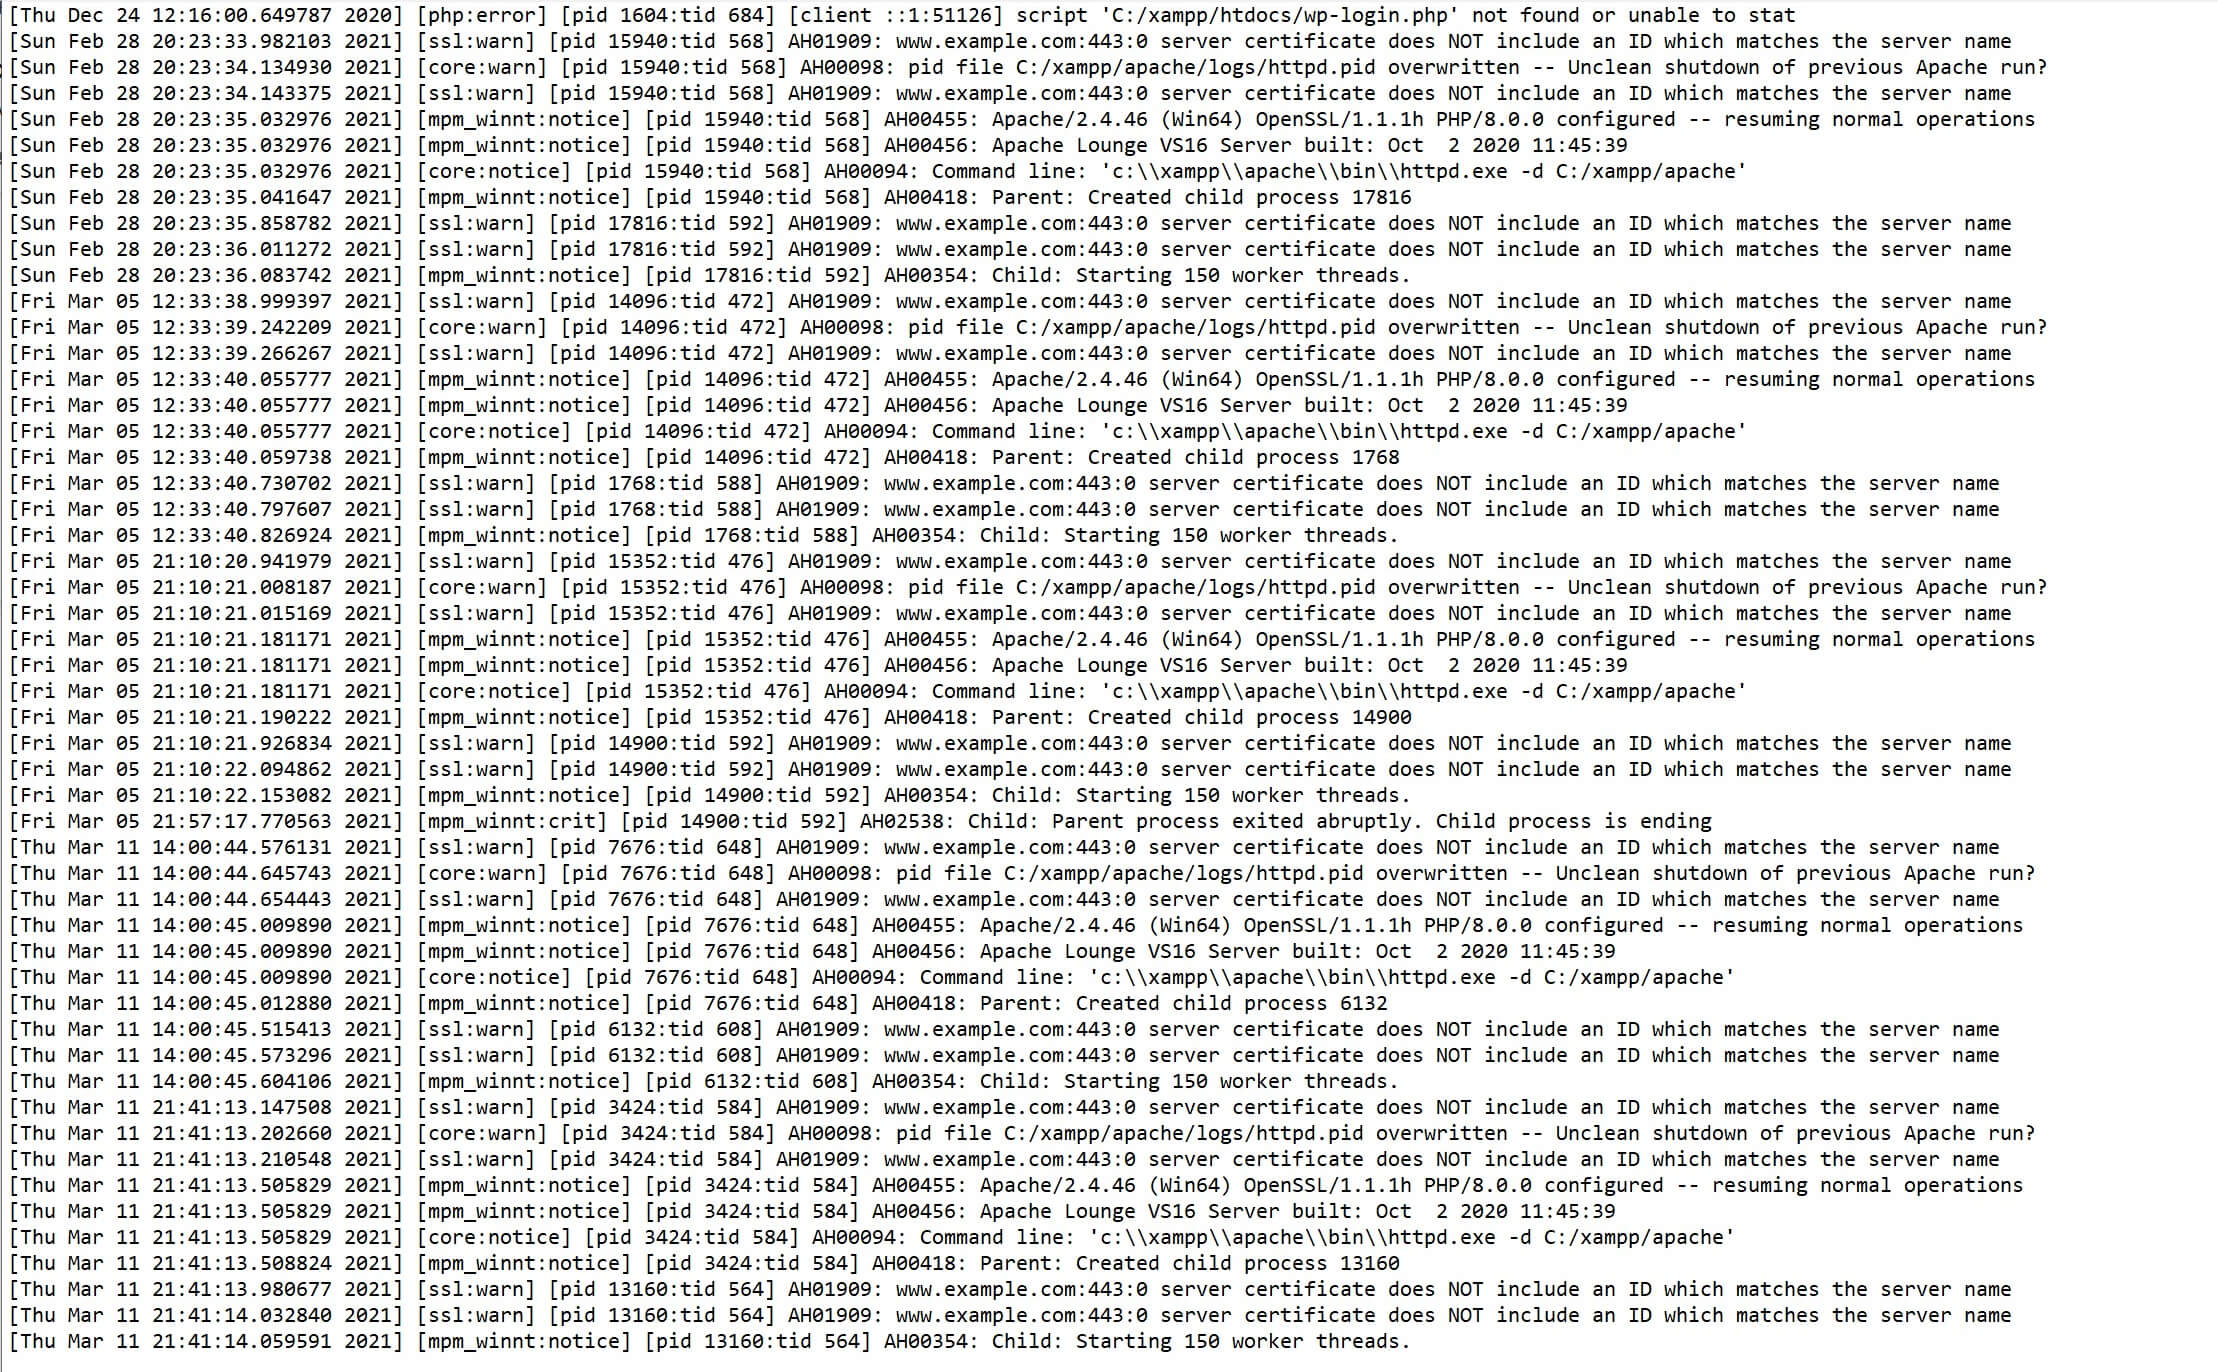 El registro de errores de XAMPP ordenado cronológicamente.